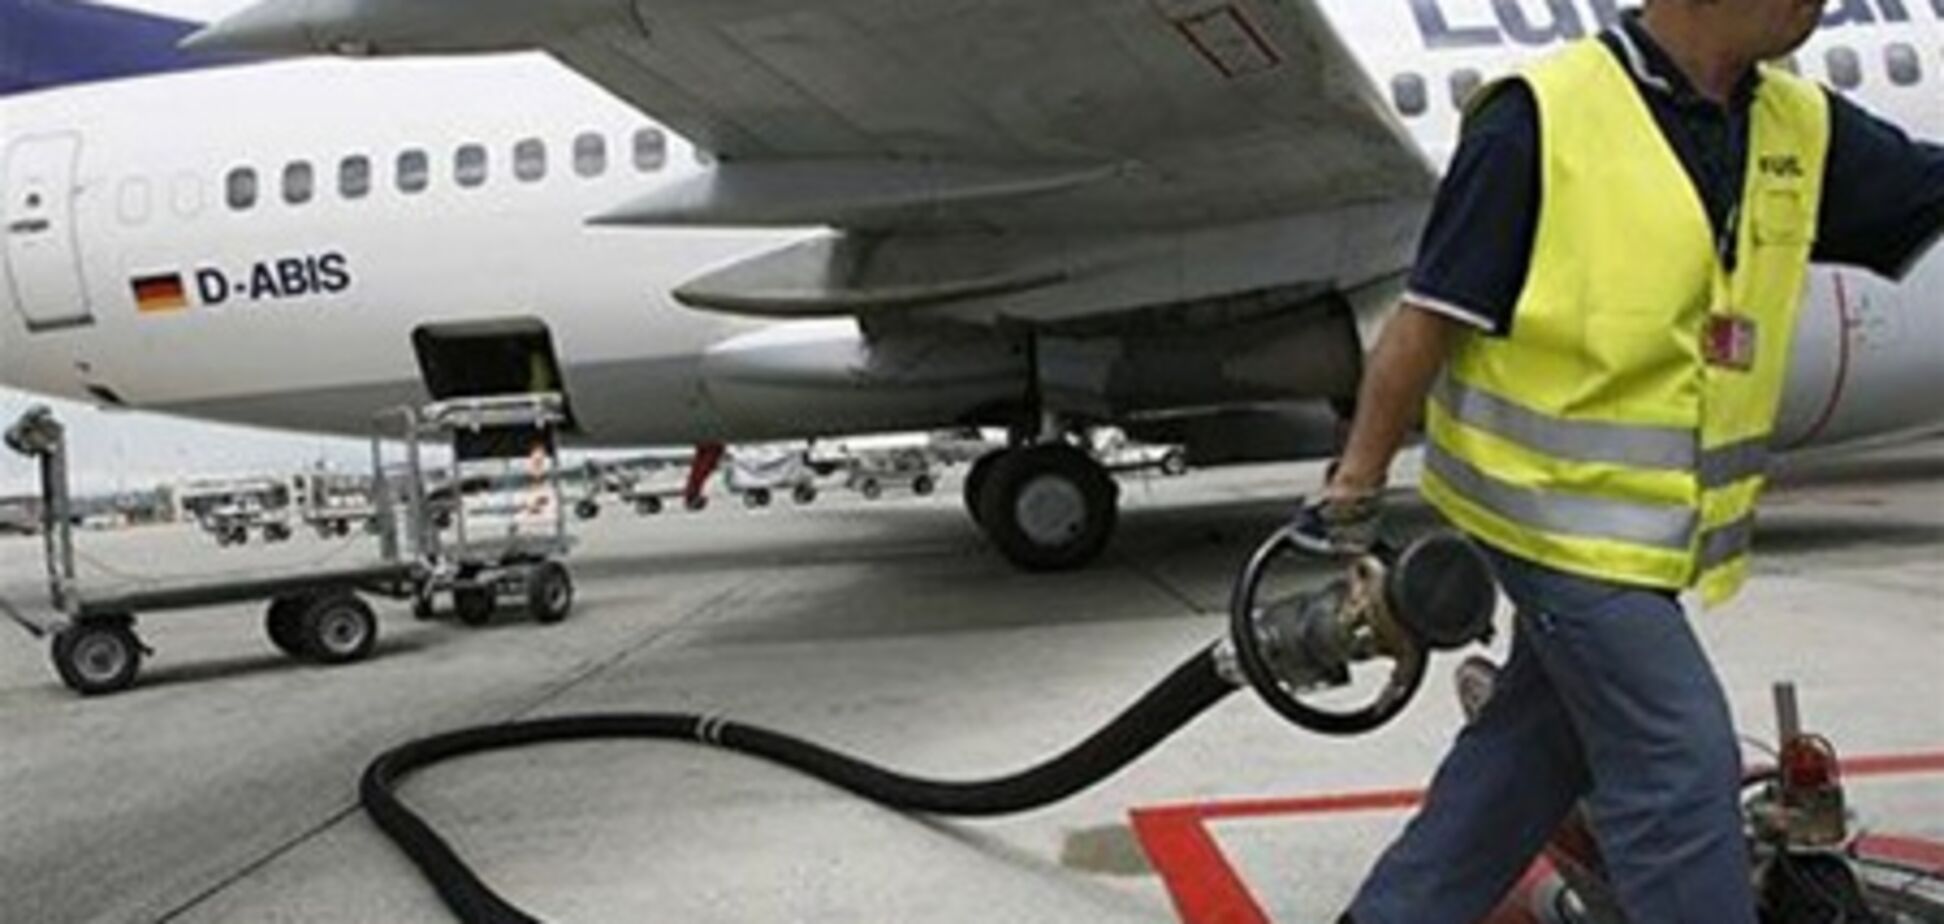 Іранська влада перестали постачати паливо авіакомпаніям через борги в $ 150 млн